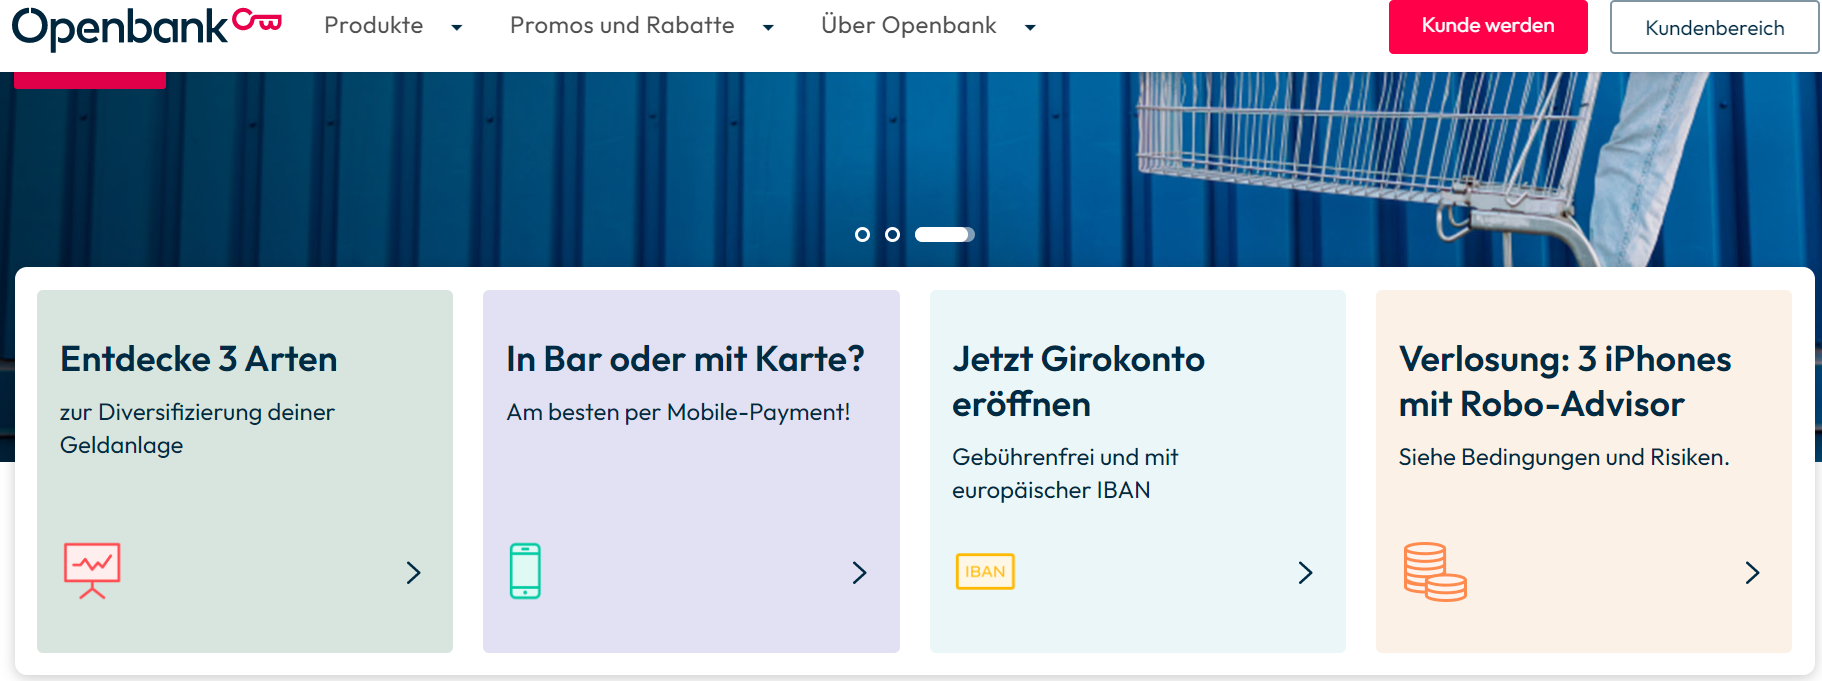 Openbank_homepage